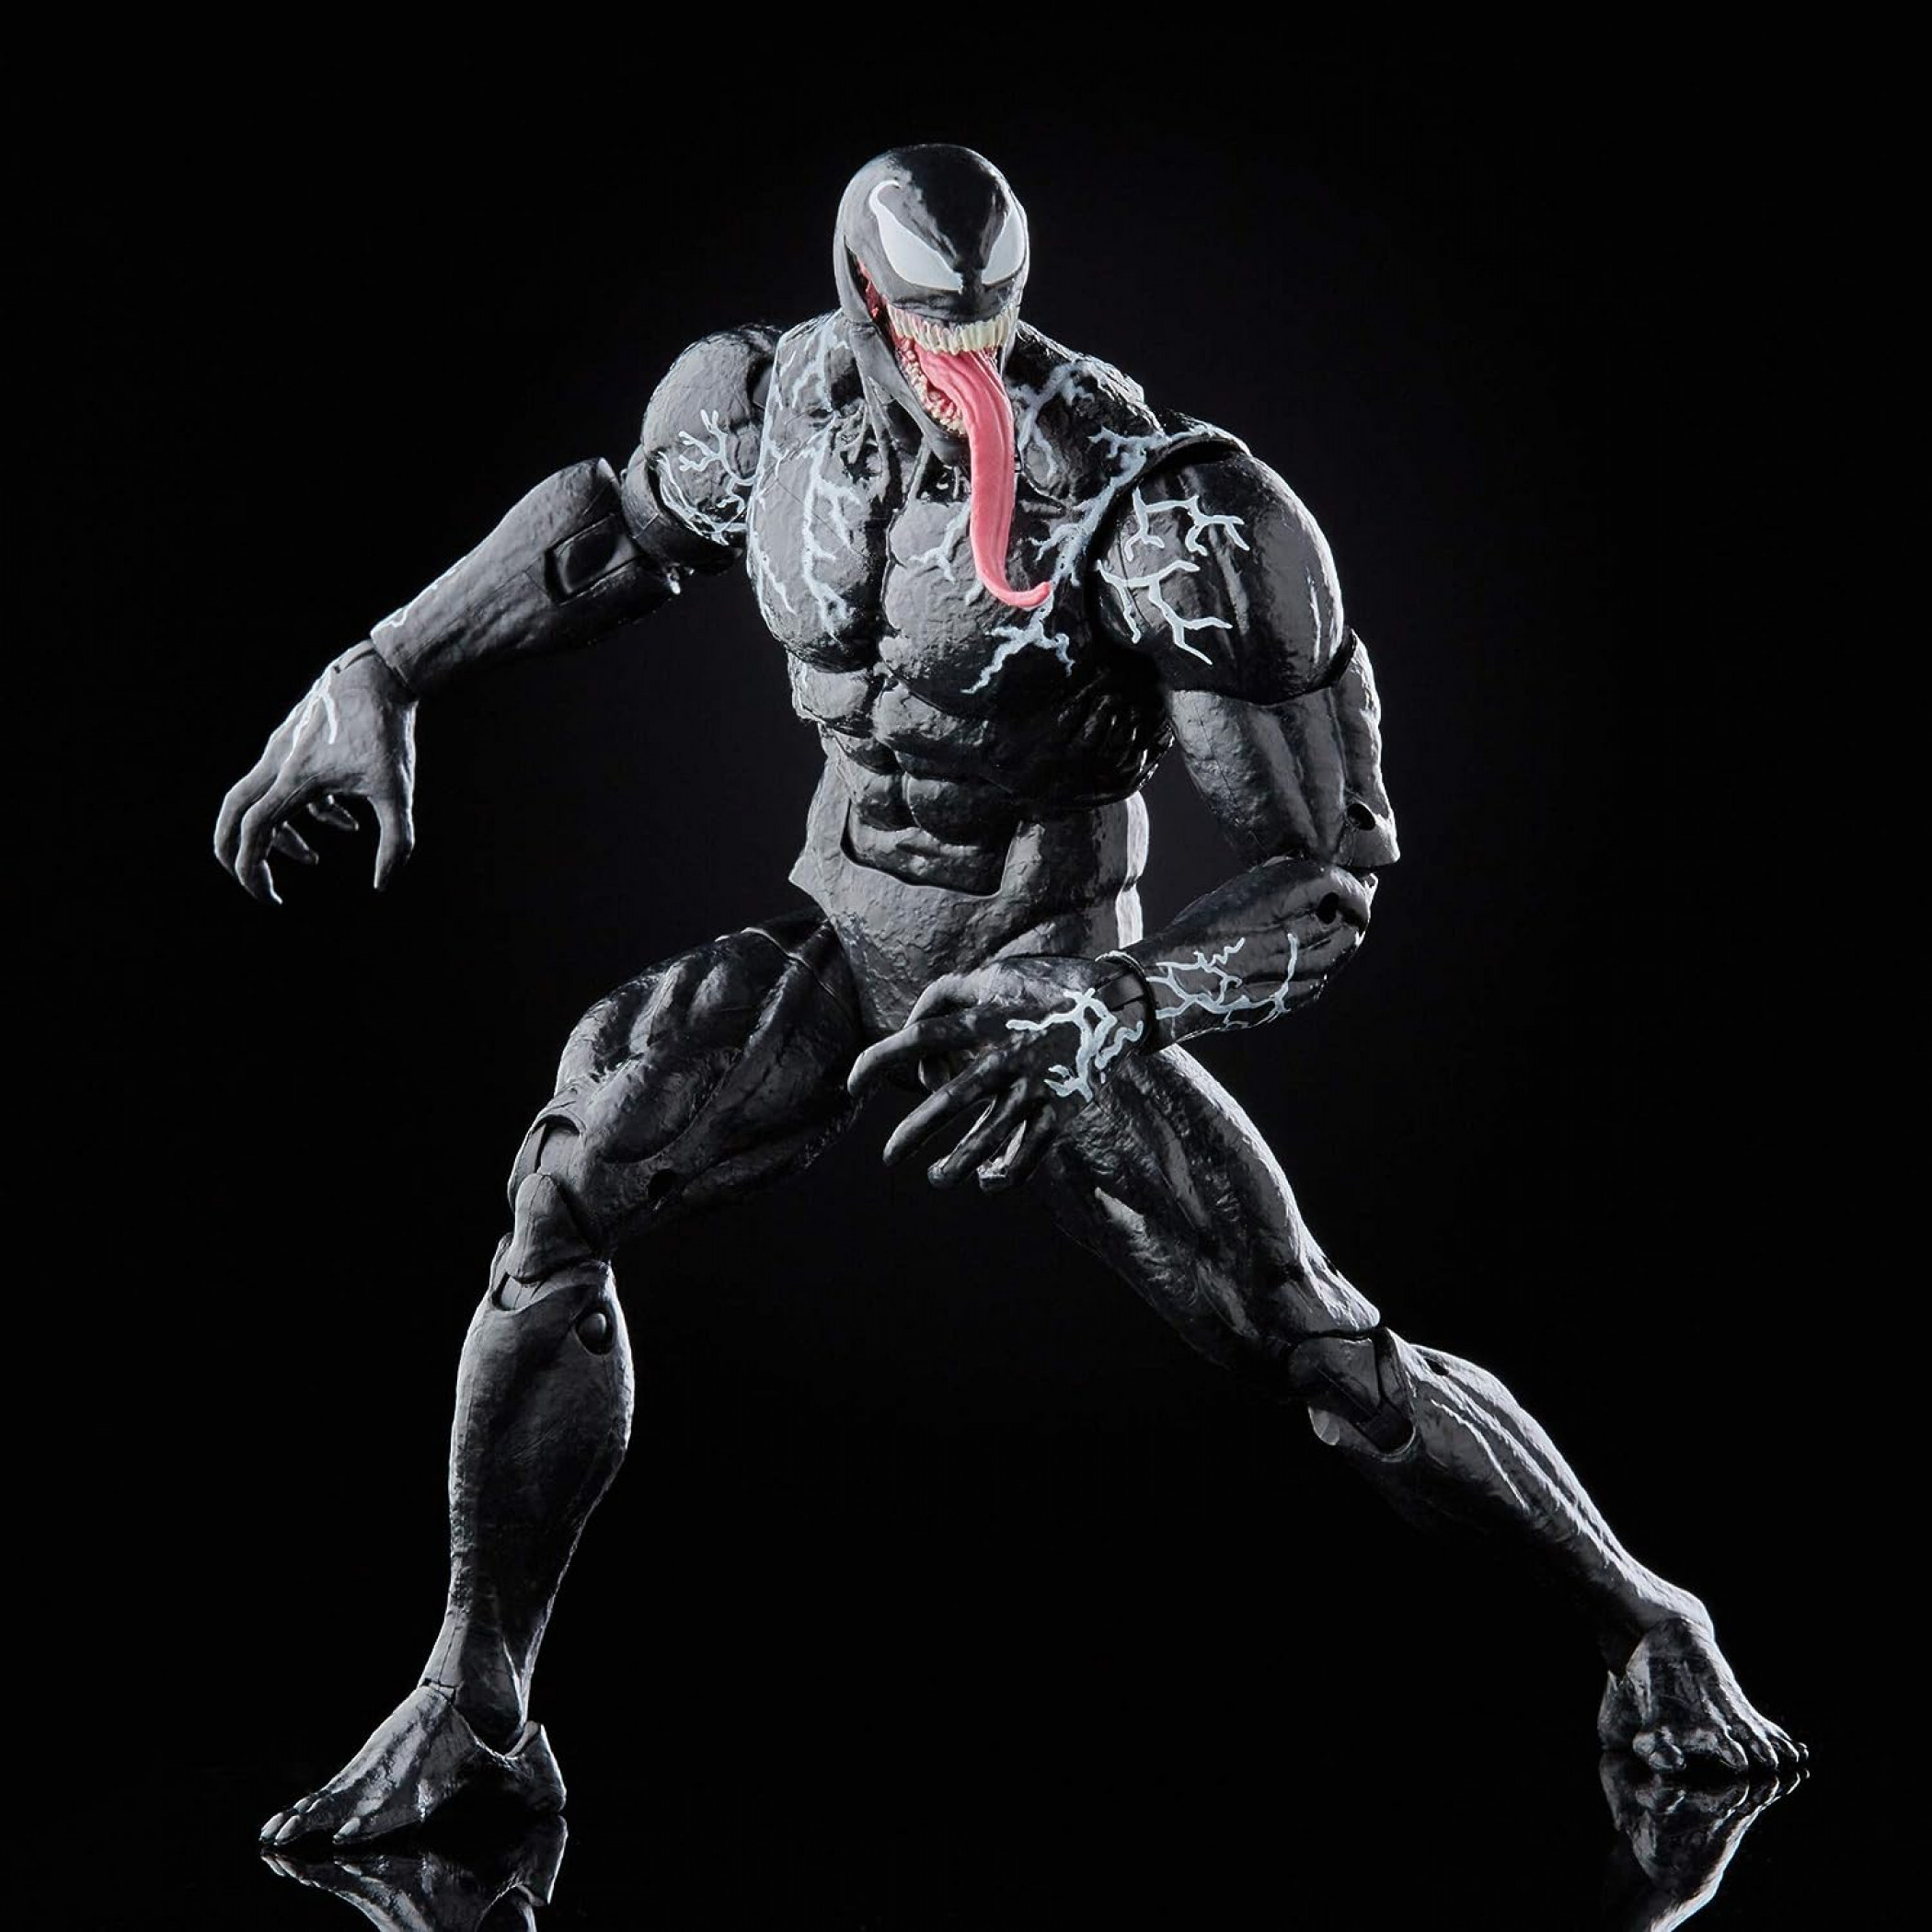 Marvel Comics Venom 6" Posable Figure with Interchangeable Parts